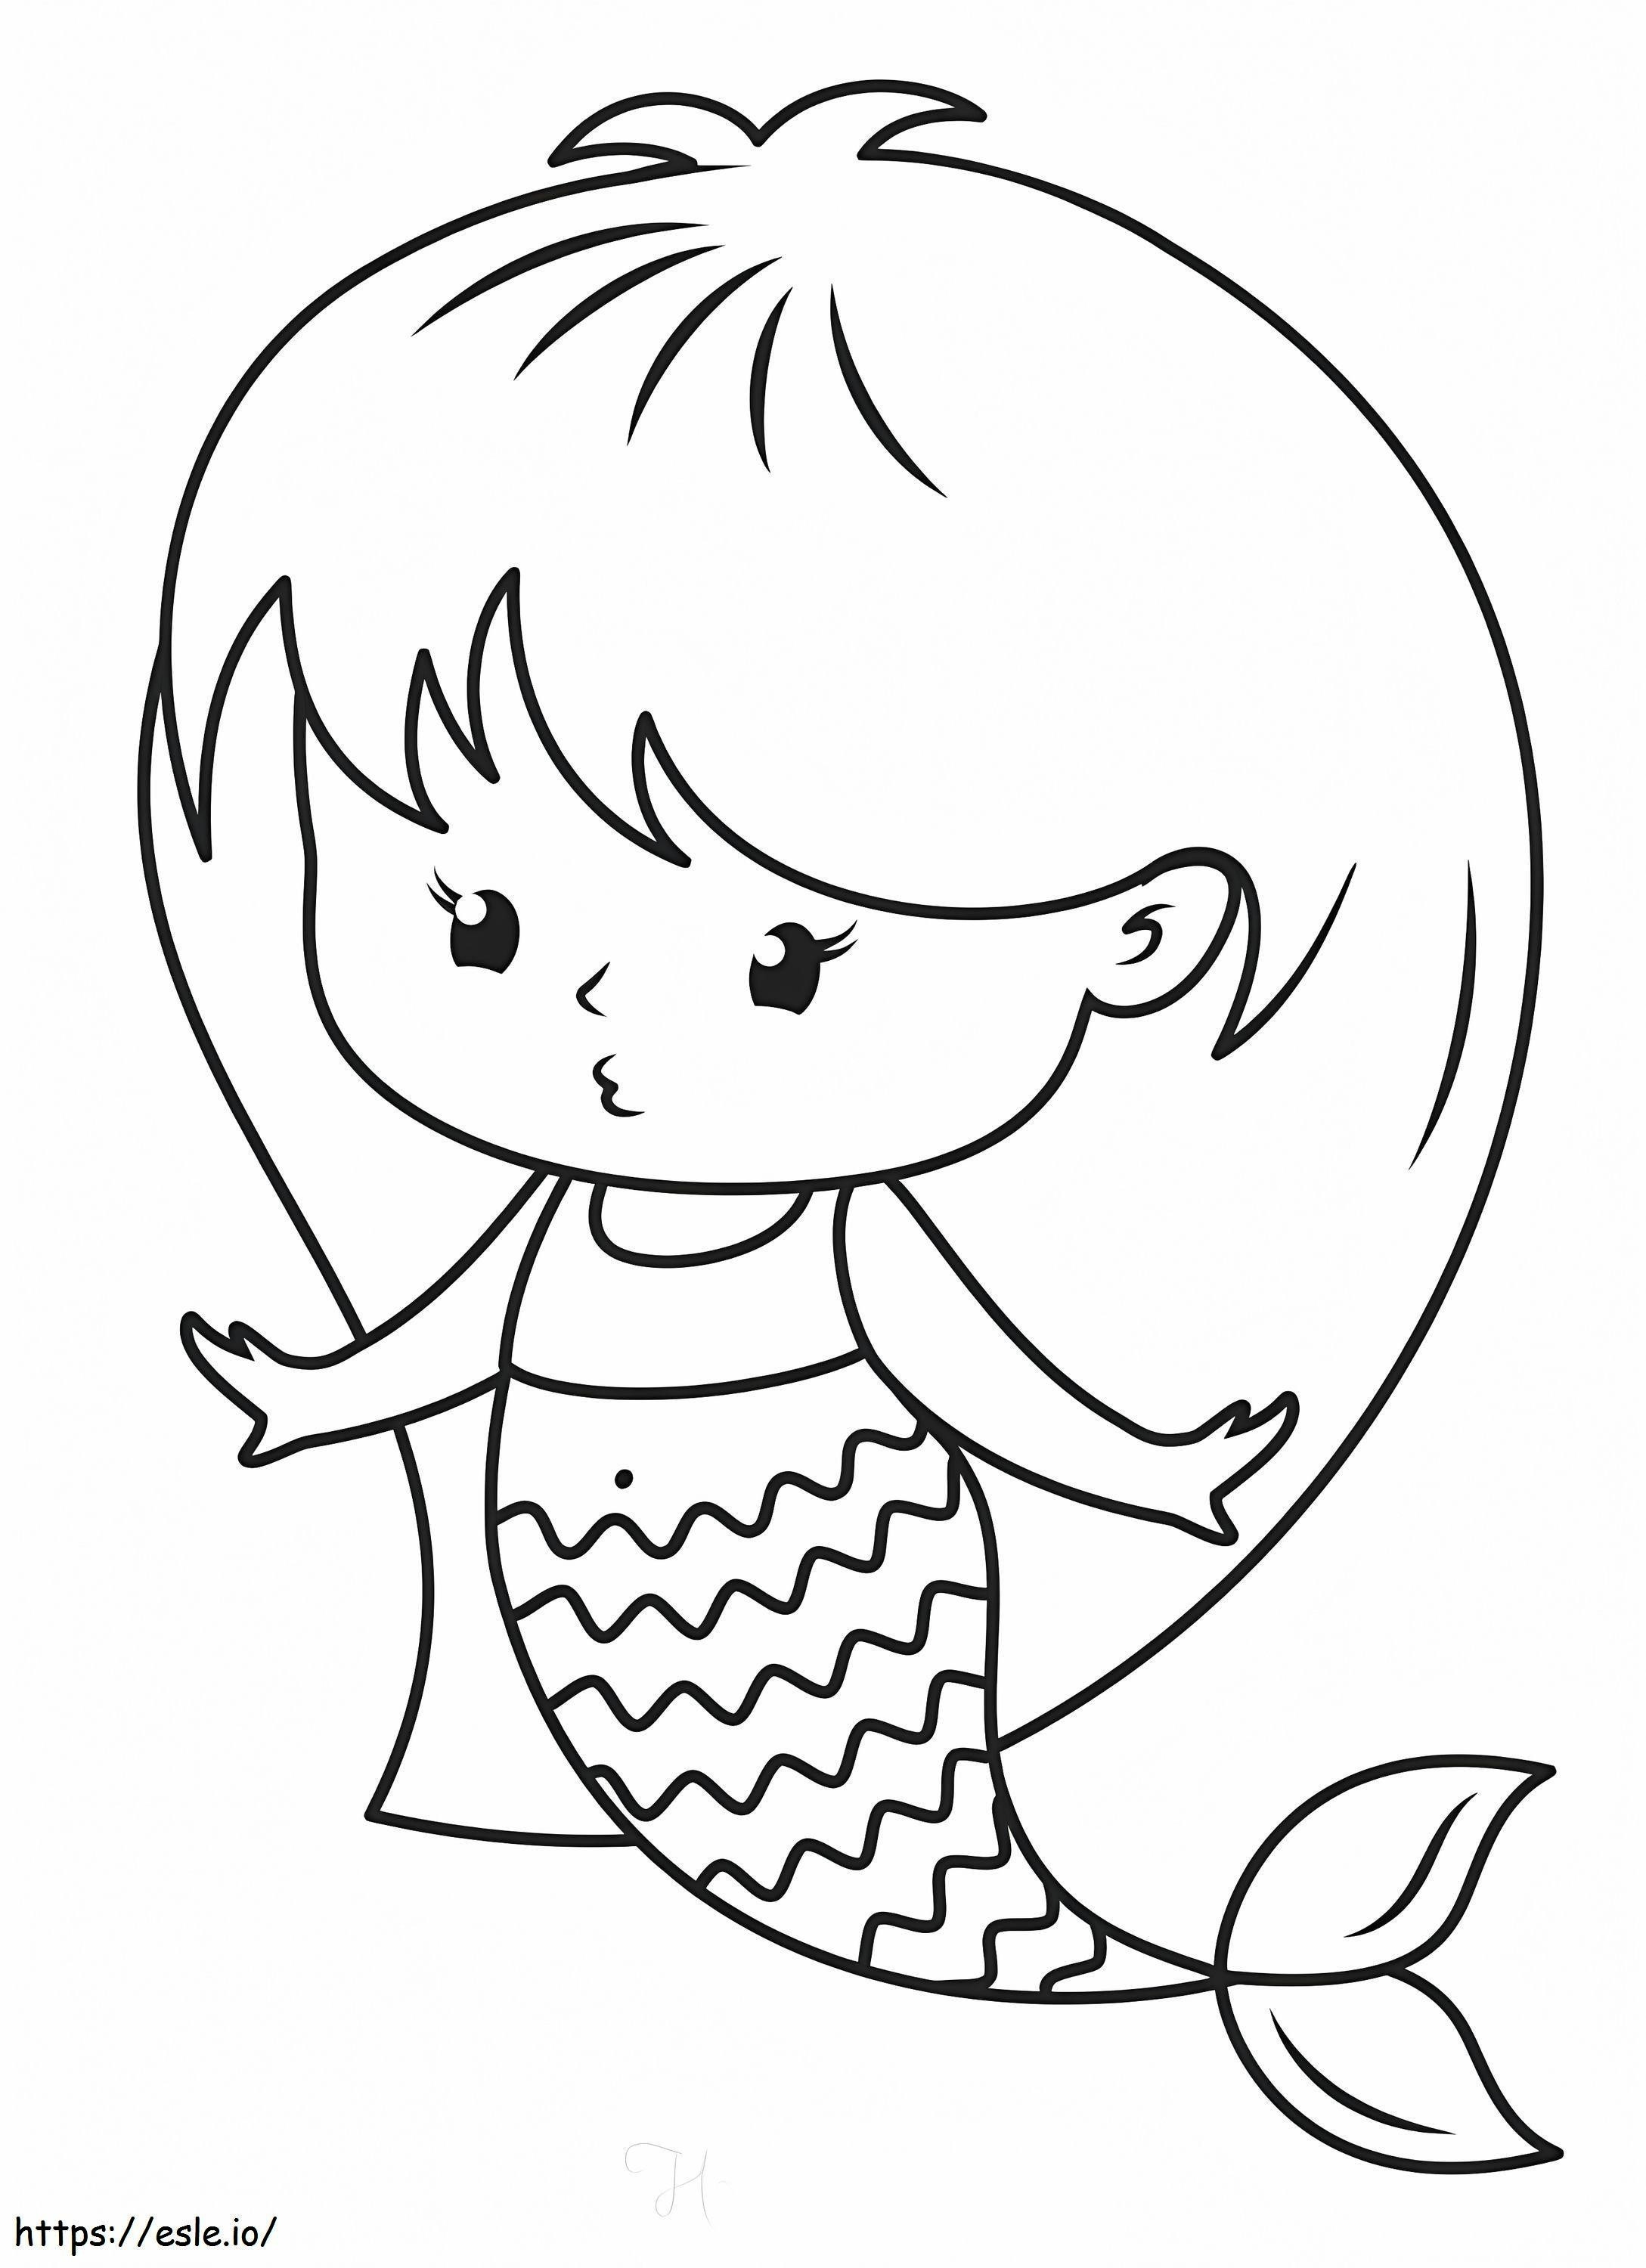 Mermaid Kawaii coloring page